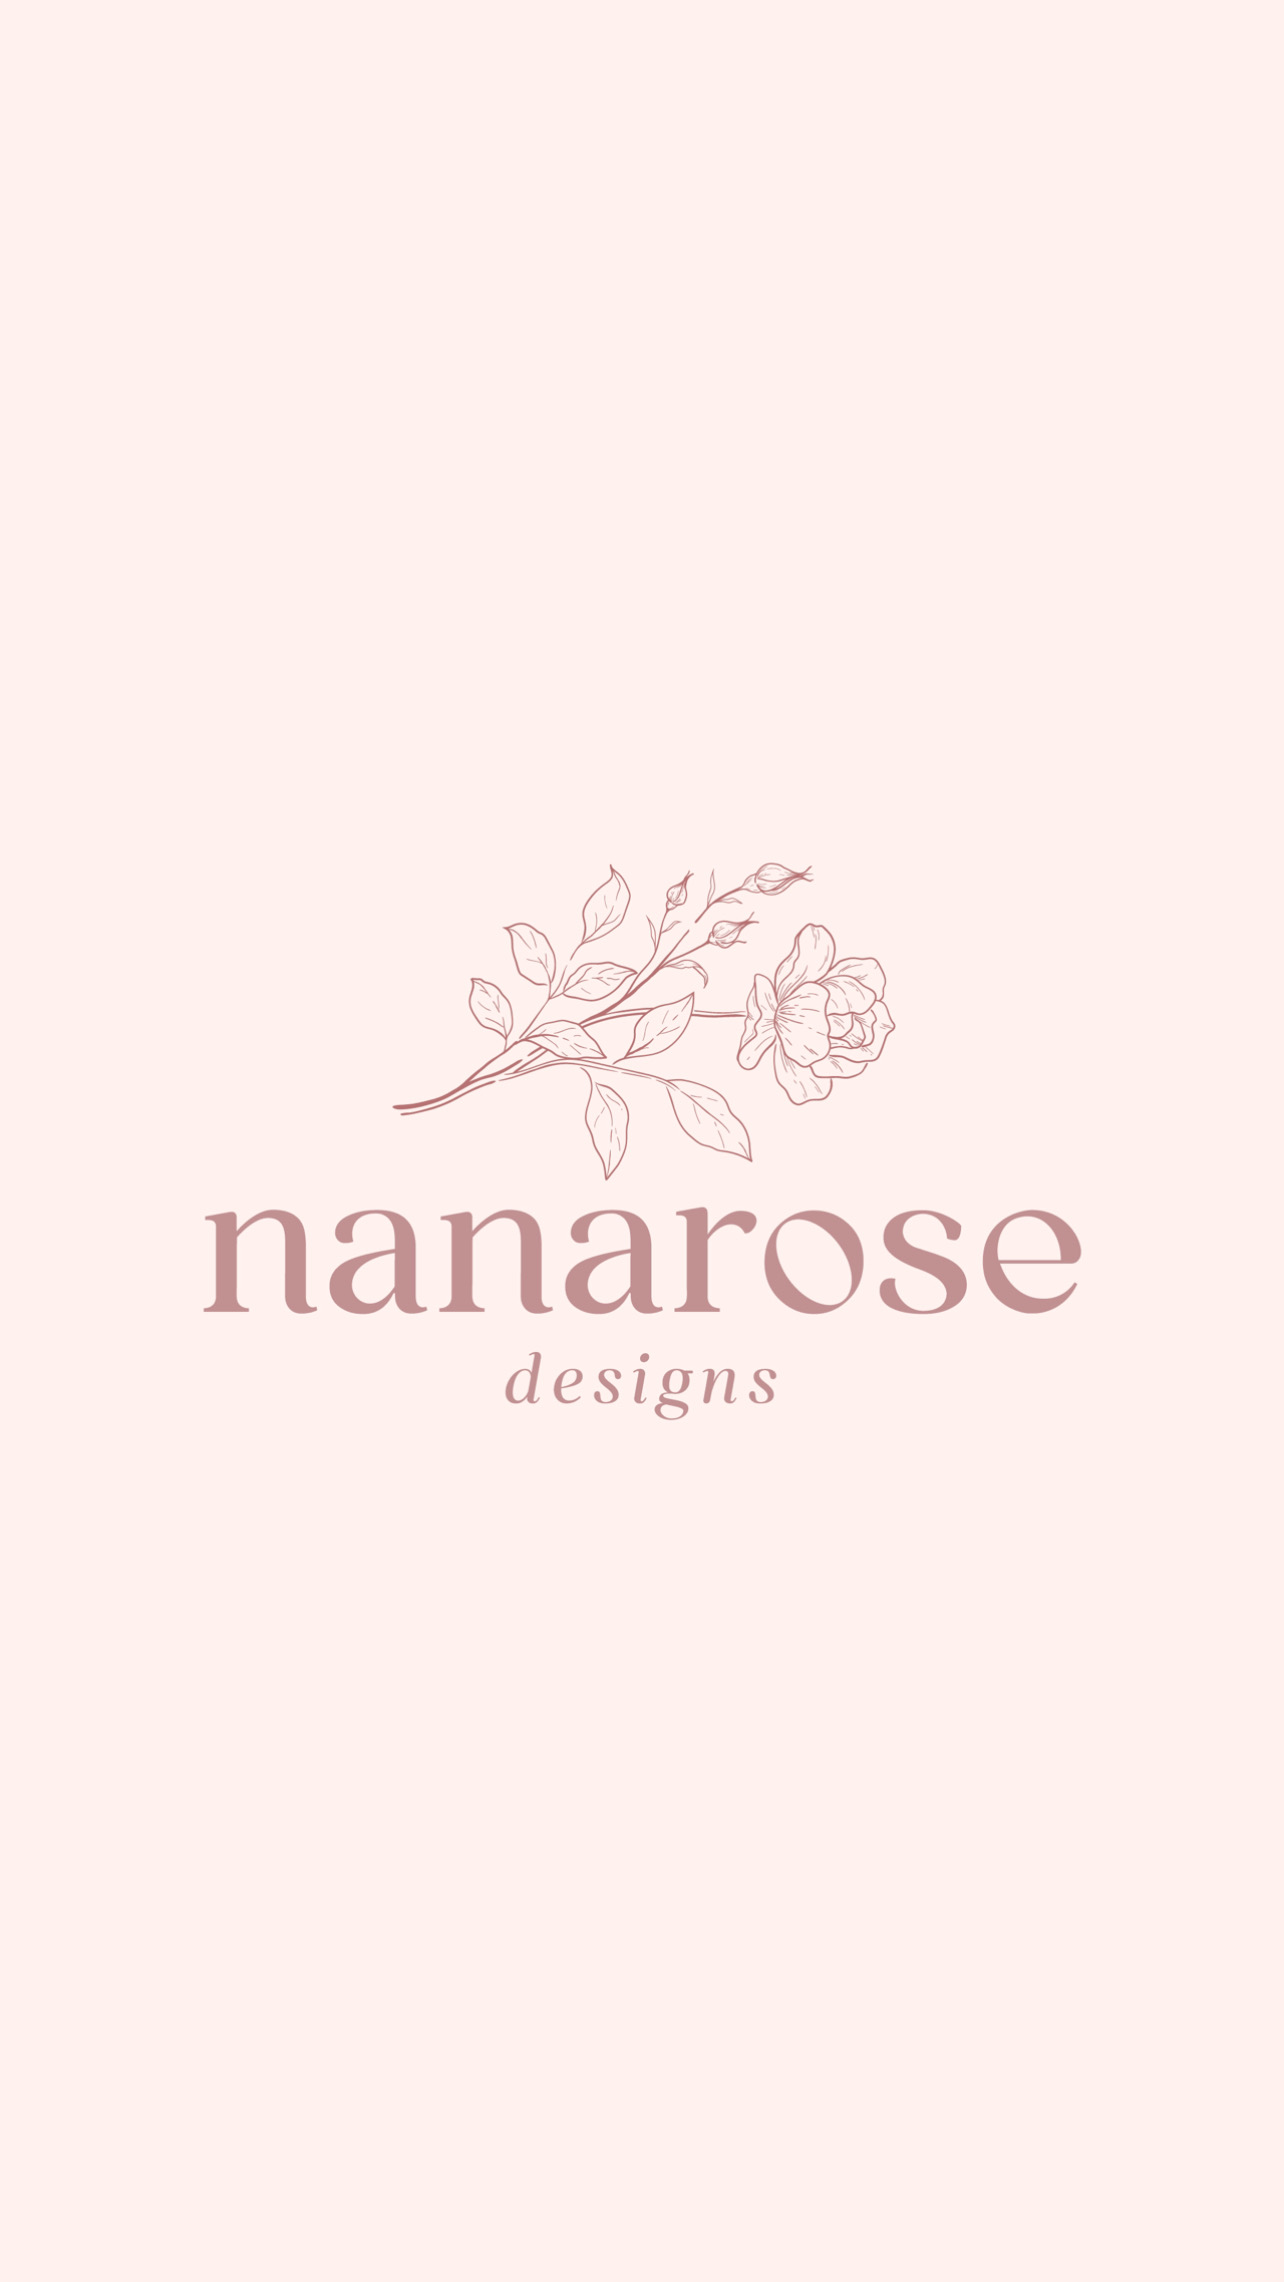 Nanarose